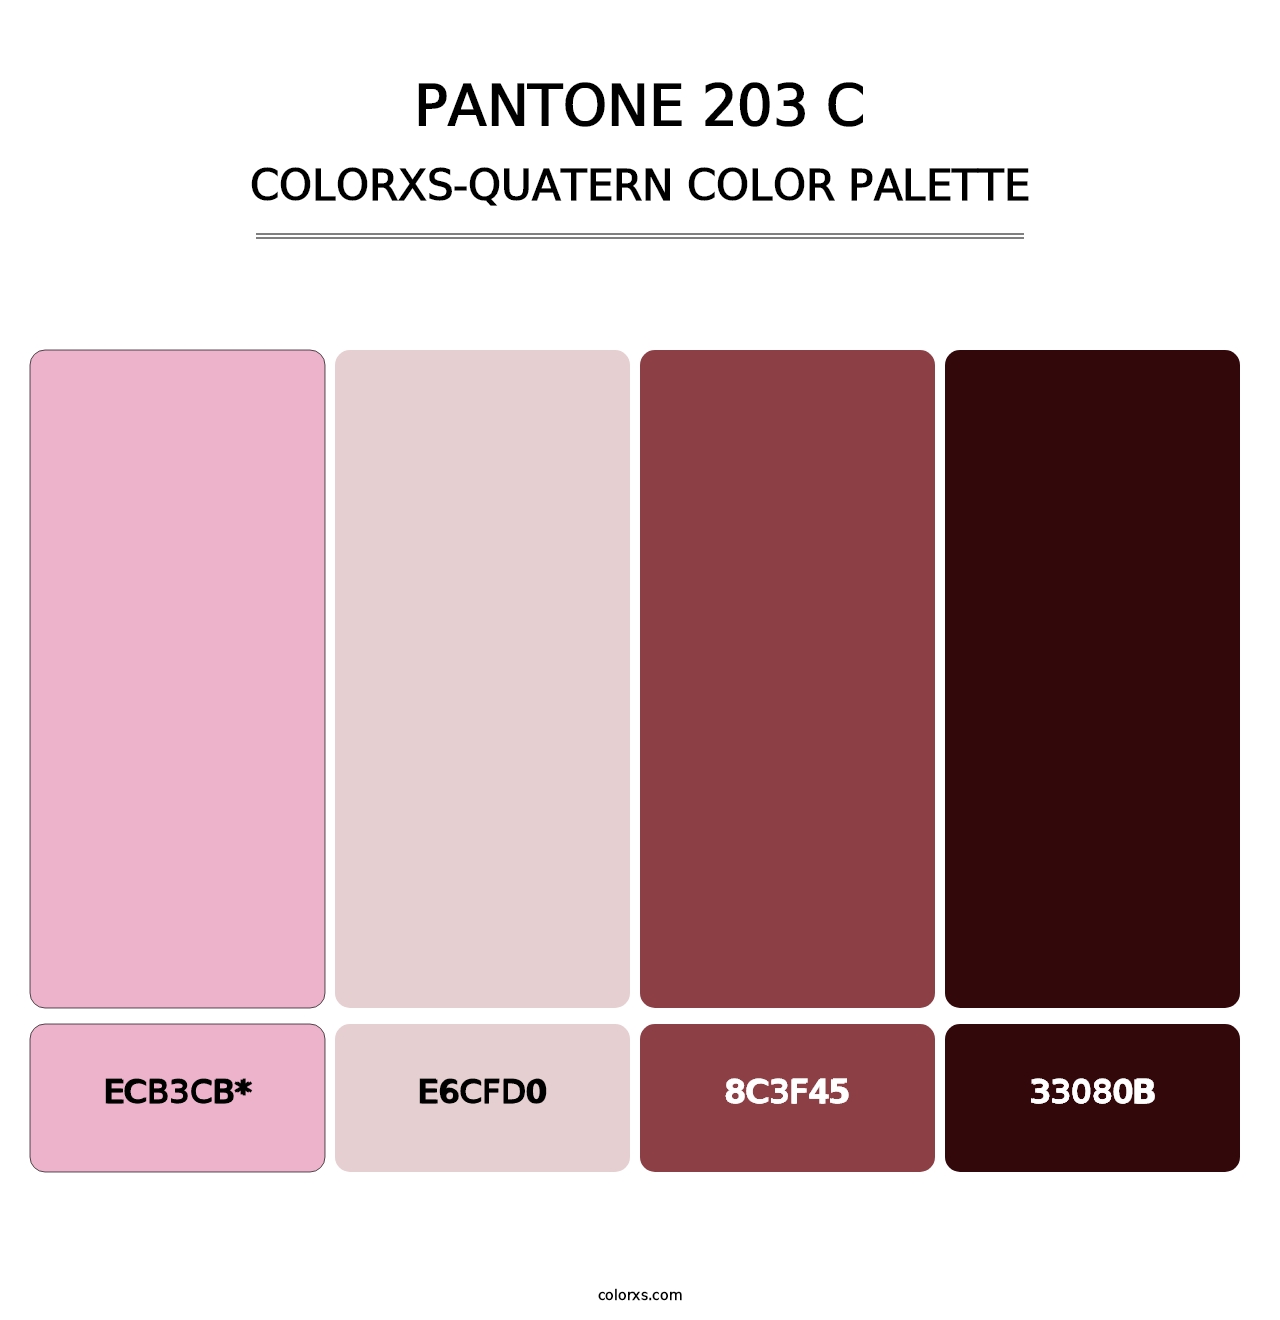 PANTONE 203 C - Colorxs Quatern Palette